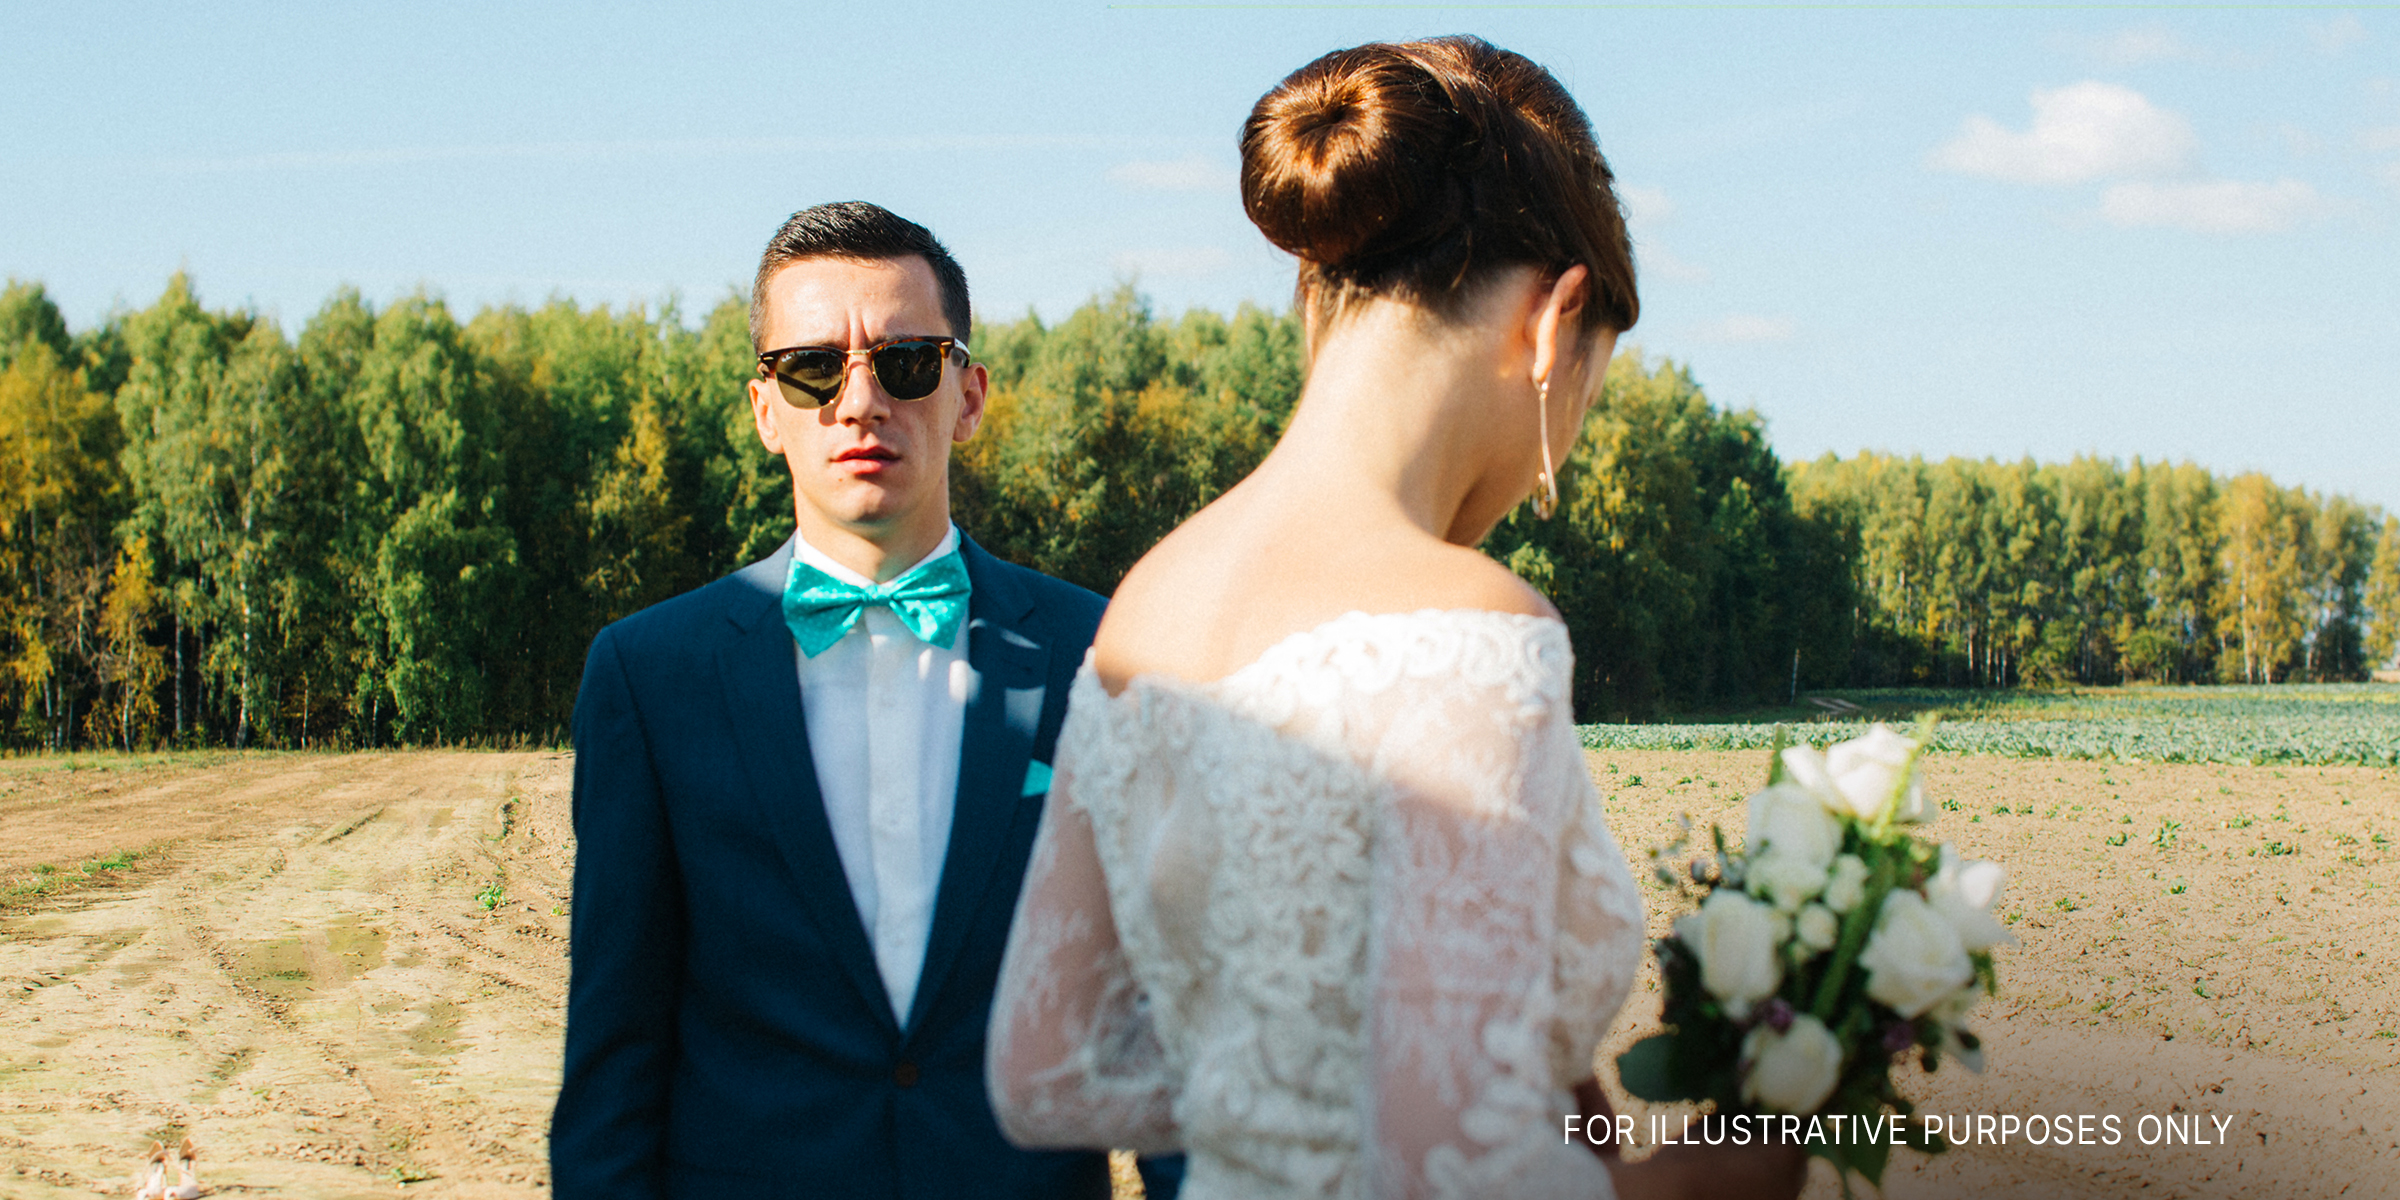 Eine Braut und ein Bräutigam | Quelle: Getty Images